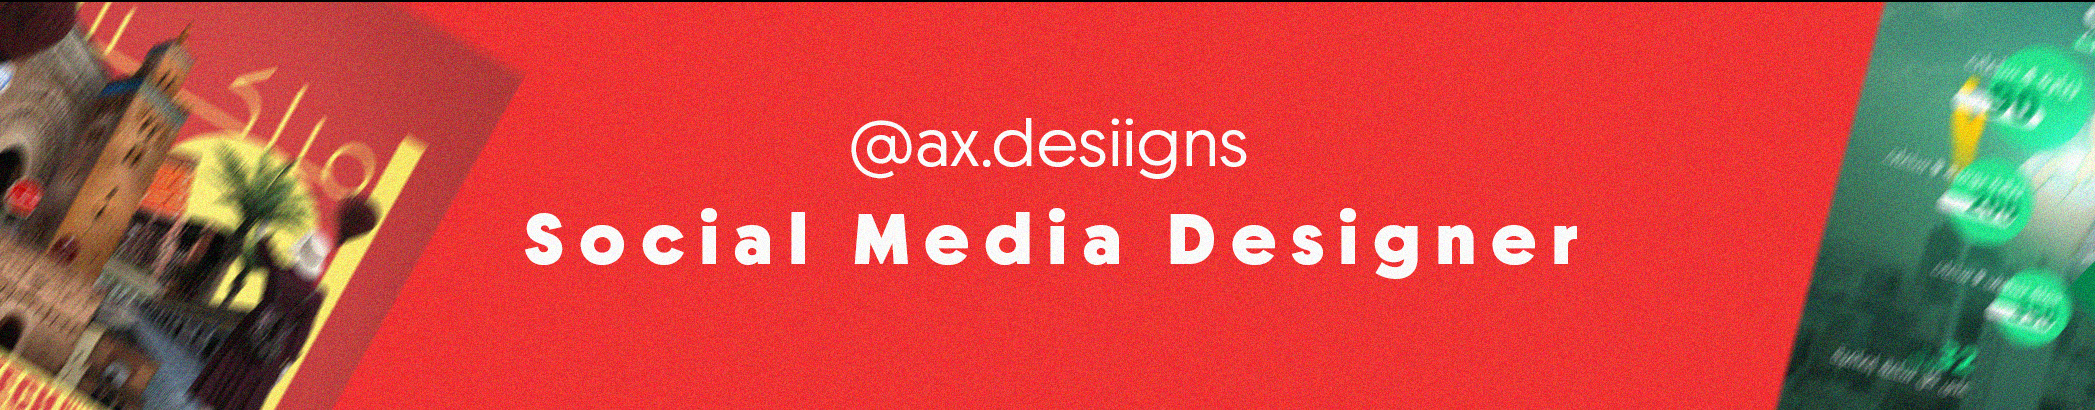 Ax Desiigns's profile banner